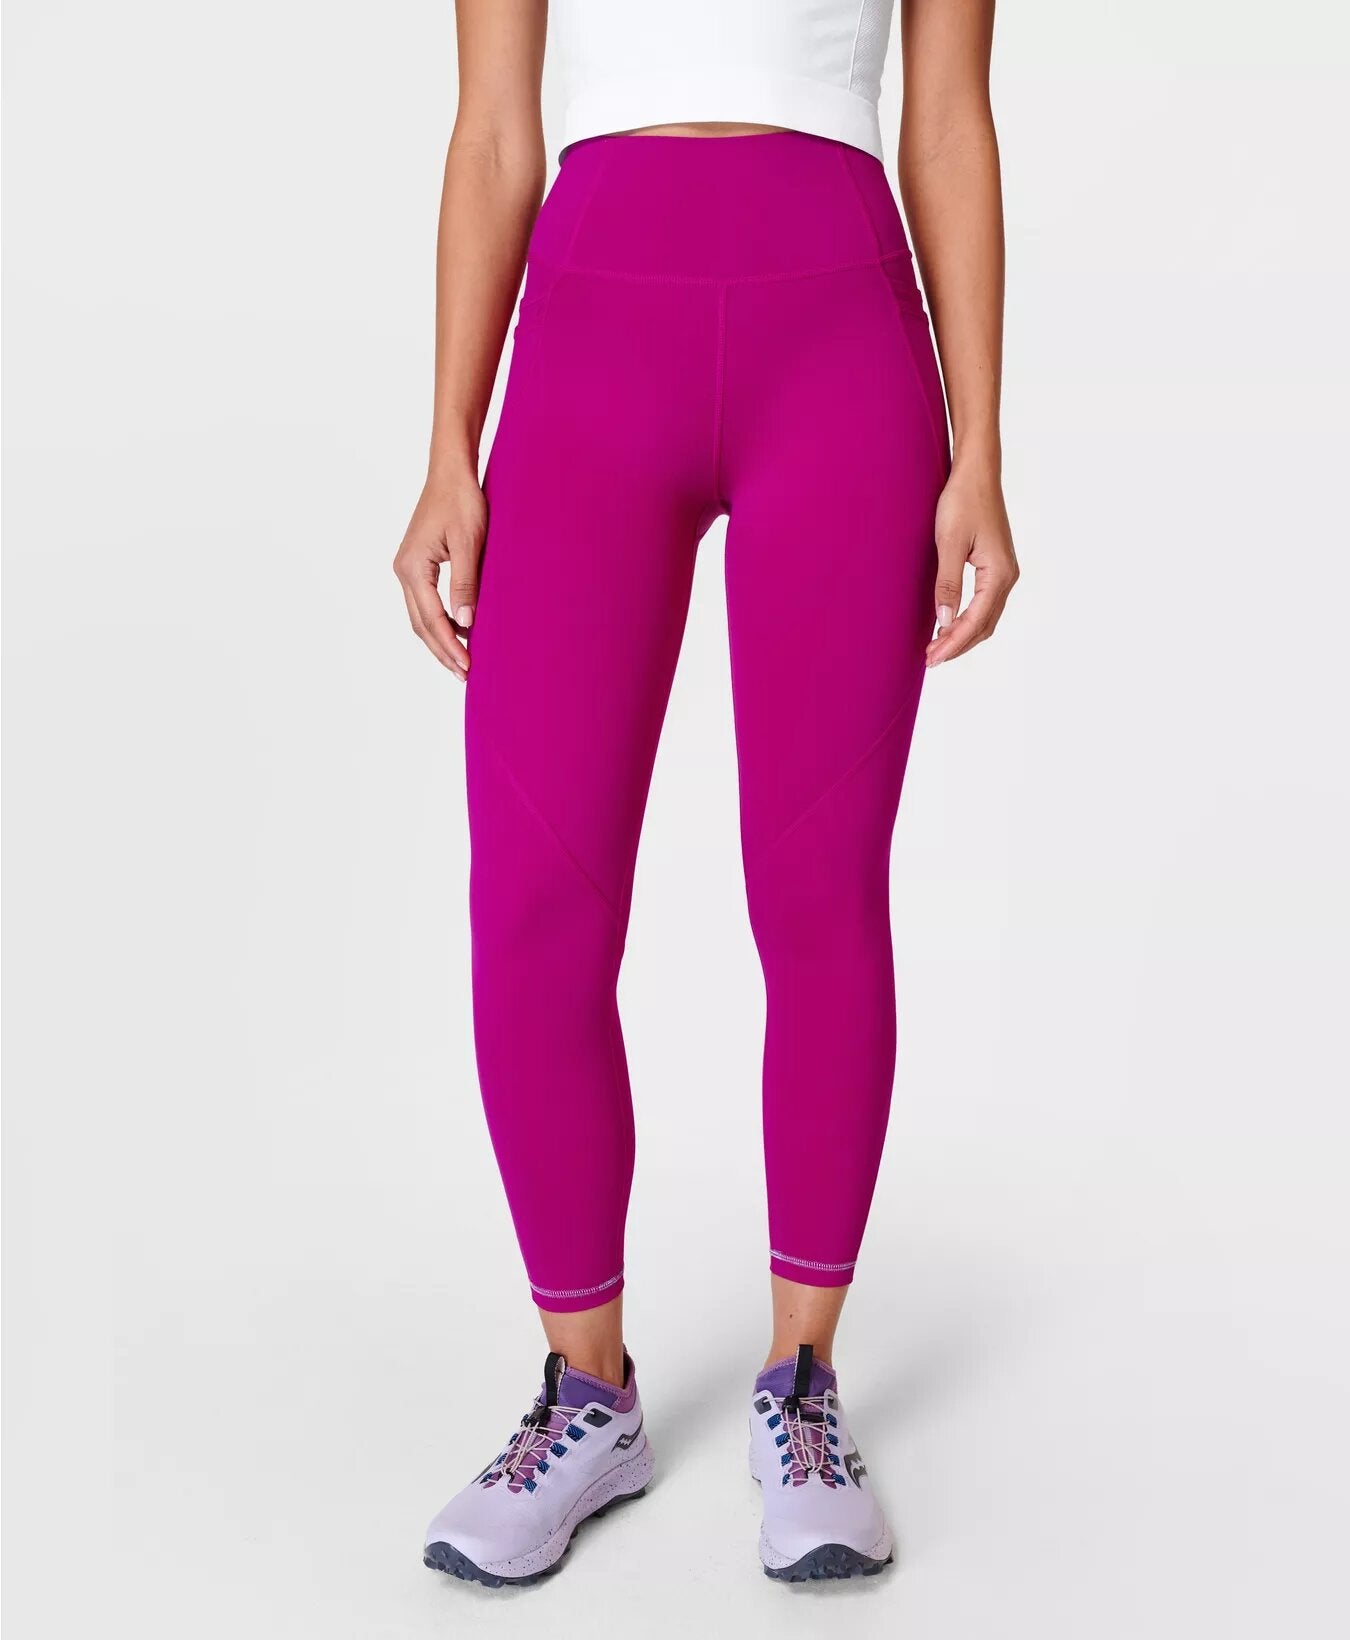 Sweaty Betty + Contour Workout Leggings, Sizes XXS-XL